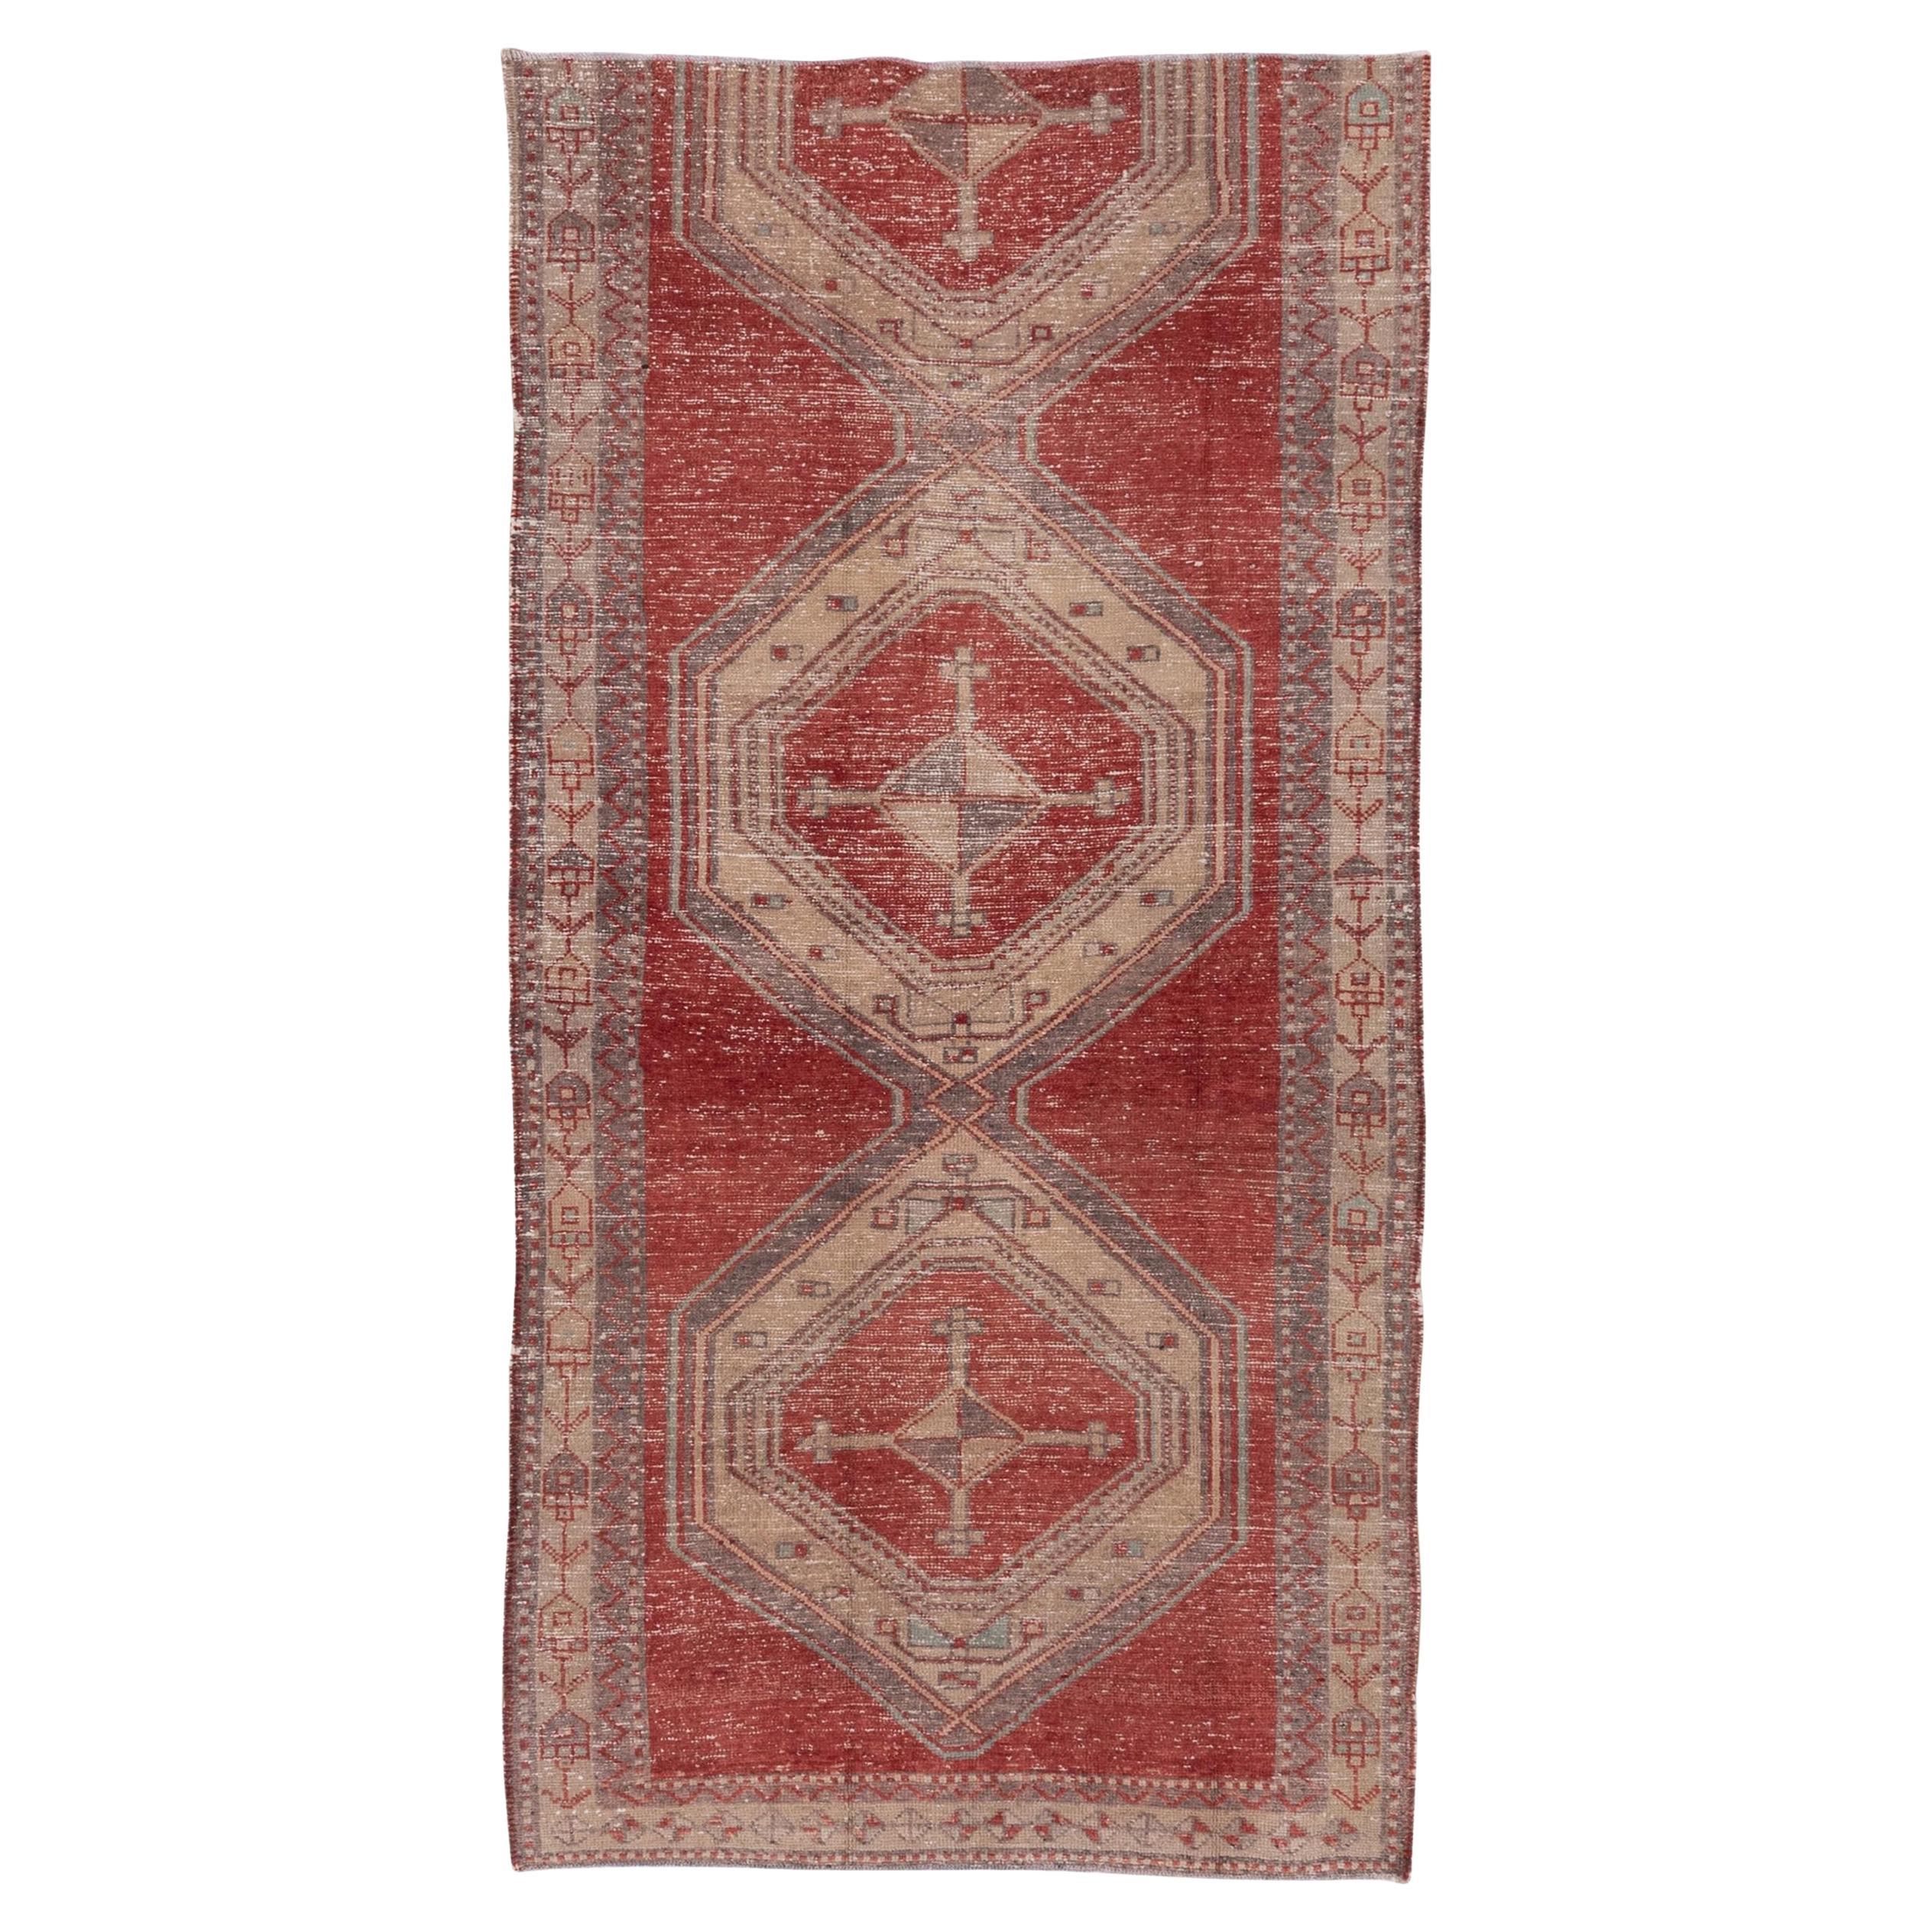 Türkischer roter Oushak-Teppich im Stammesstil, leichte Gebrauchsspuren, fragmentiert